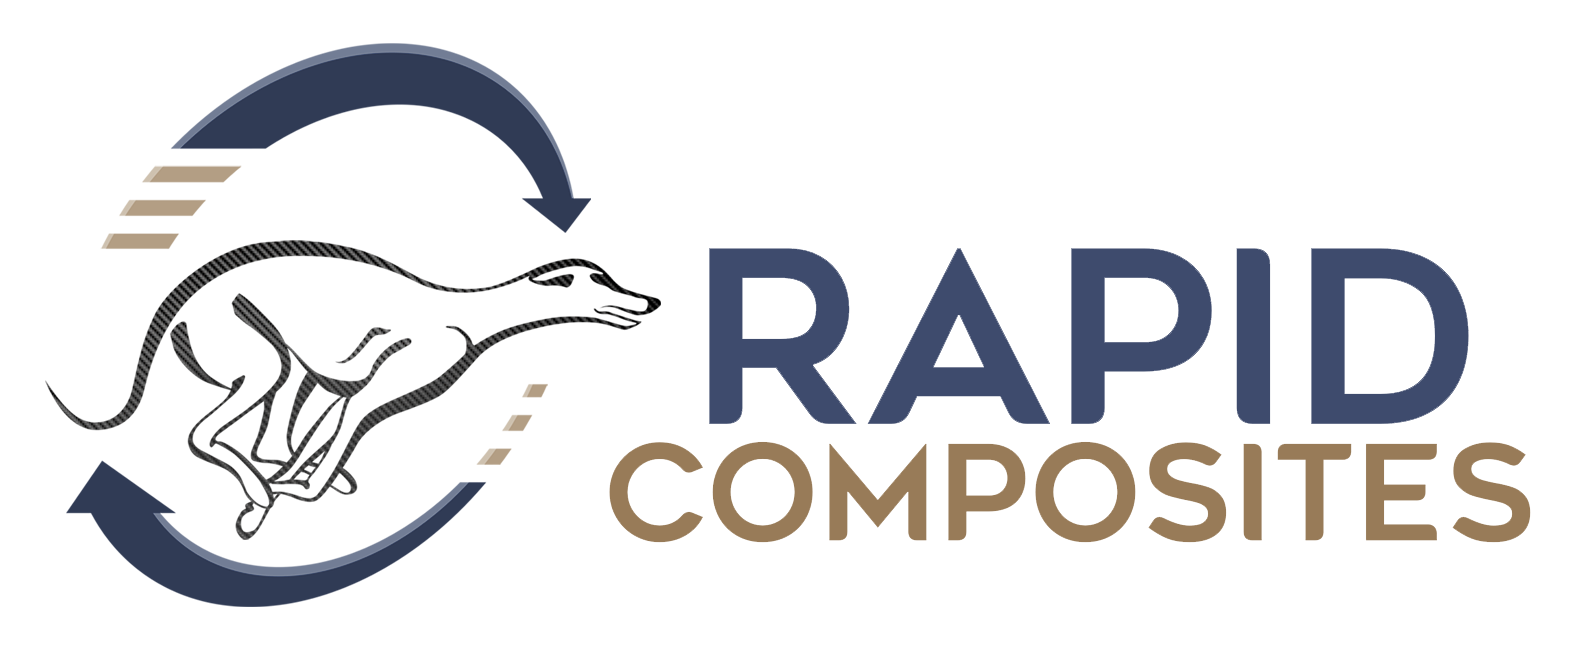 Rapid Composites